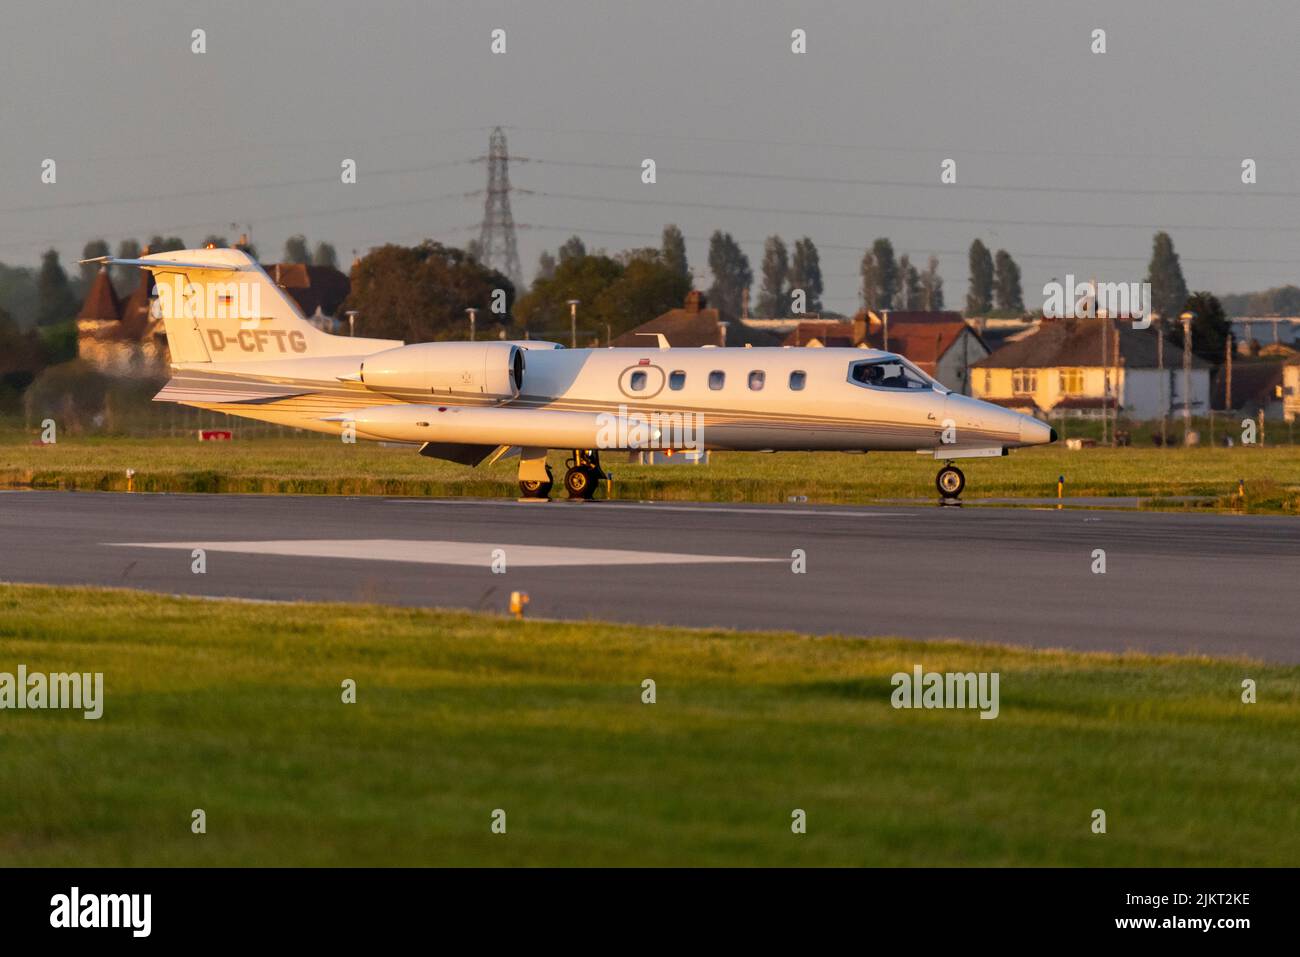 Gates Learjet 35A Privatjet D-CFTG der Quick Air Jet Charter GmbH nach der Landung am Londoner Southend Airport, Essex, Großbritannien. Schein des Sonnenuntergangs Stockfoto